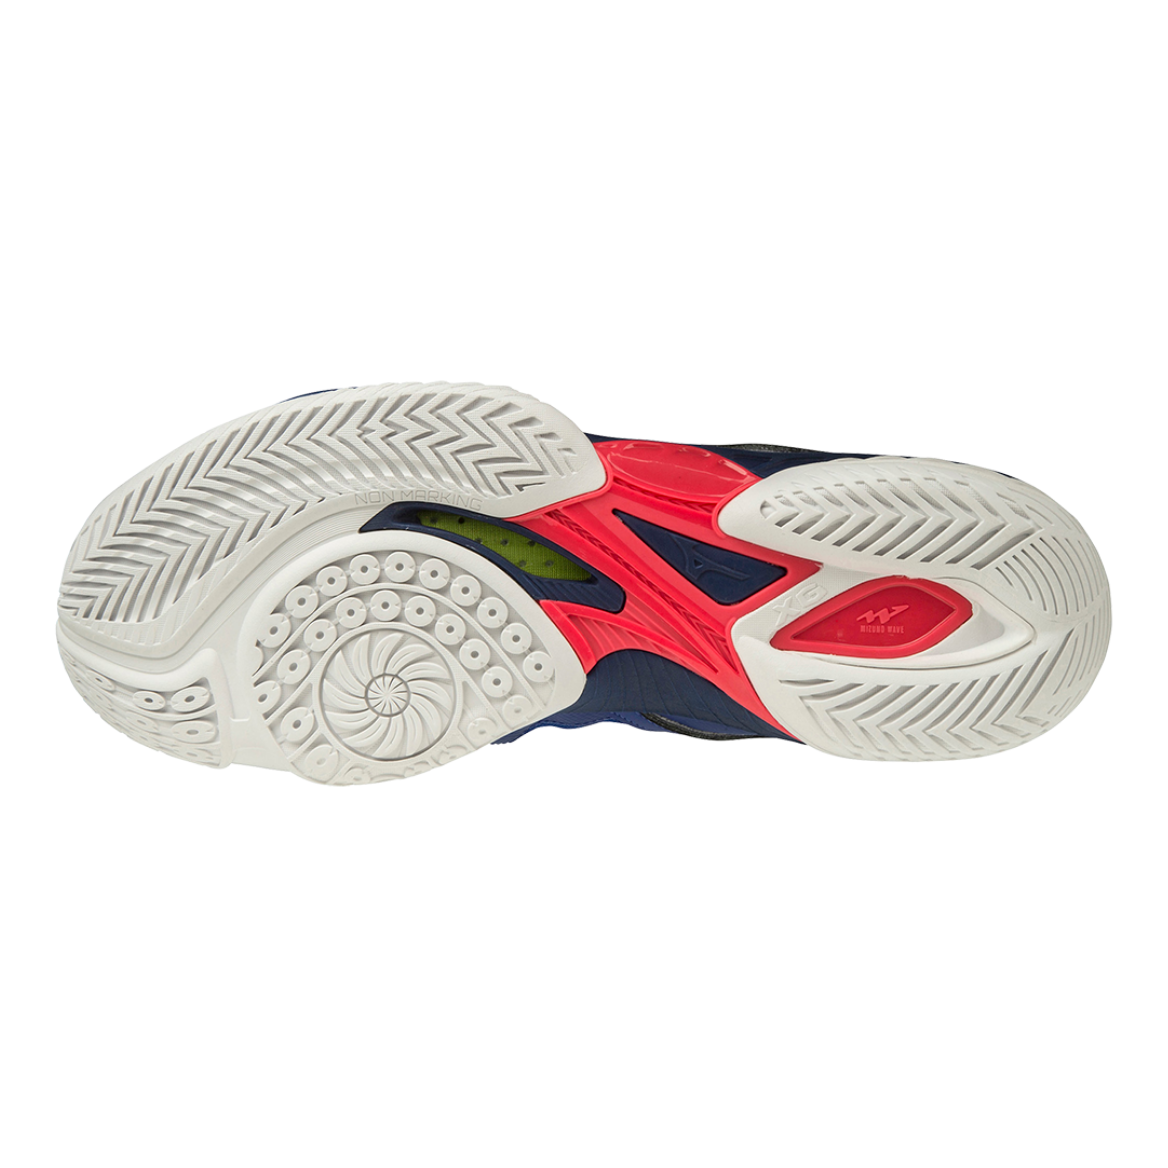 Giày cầu lông Mizuno Wave Claw Neo - Xanh (Mã JP)